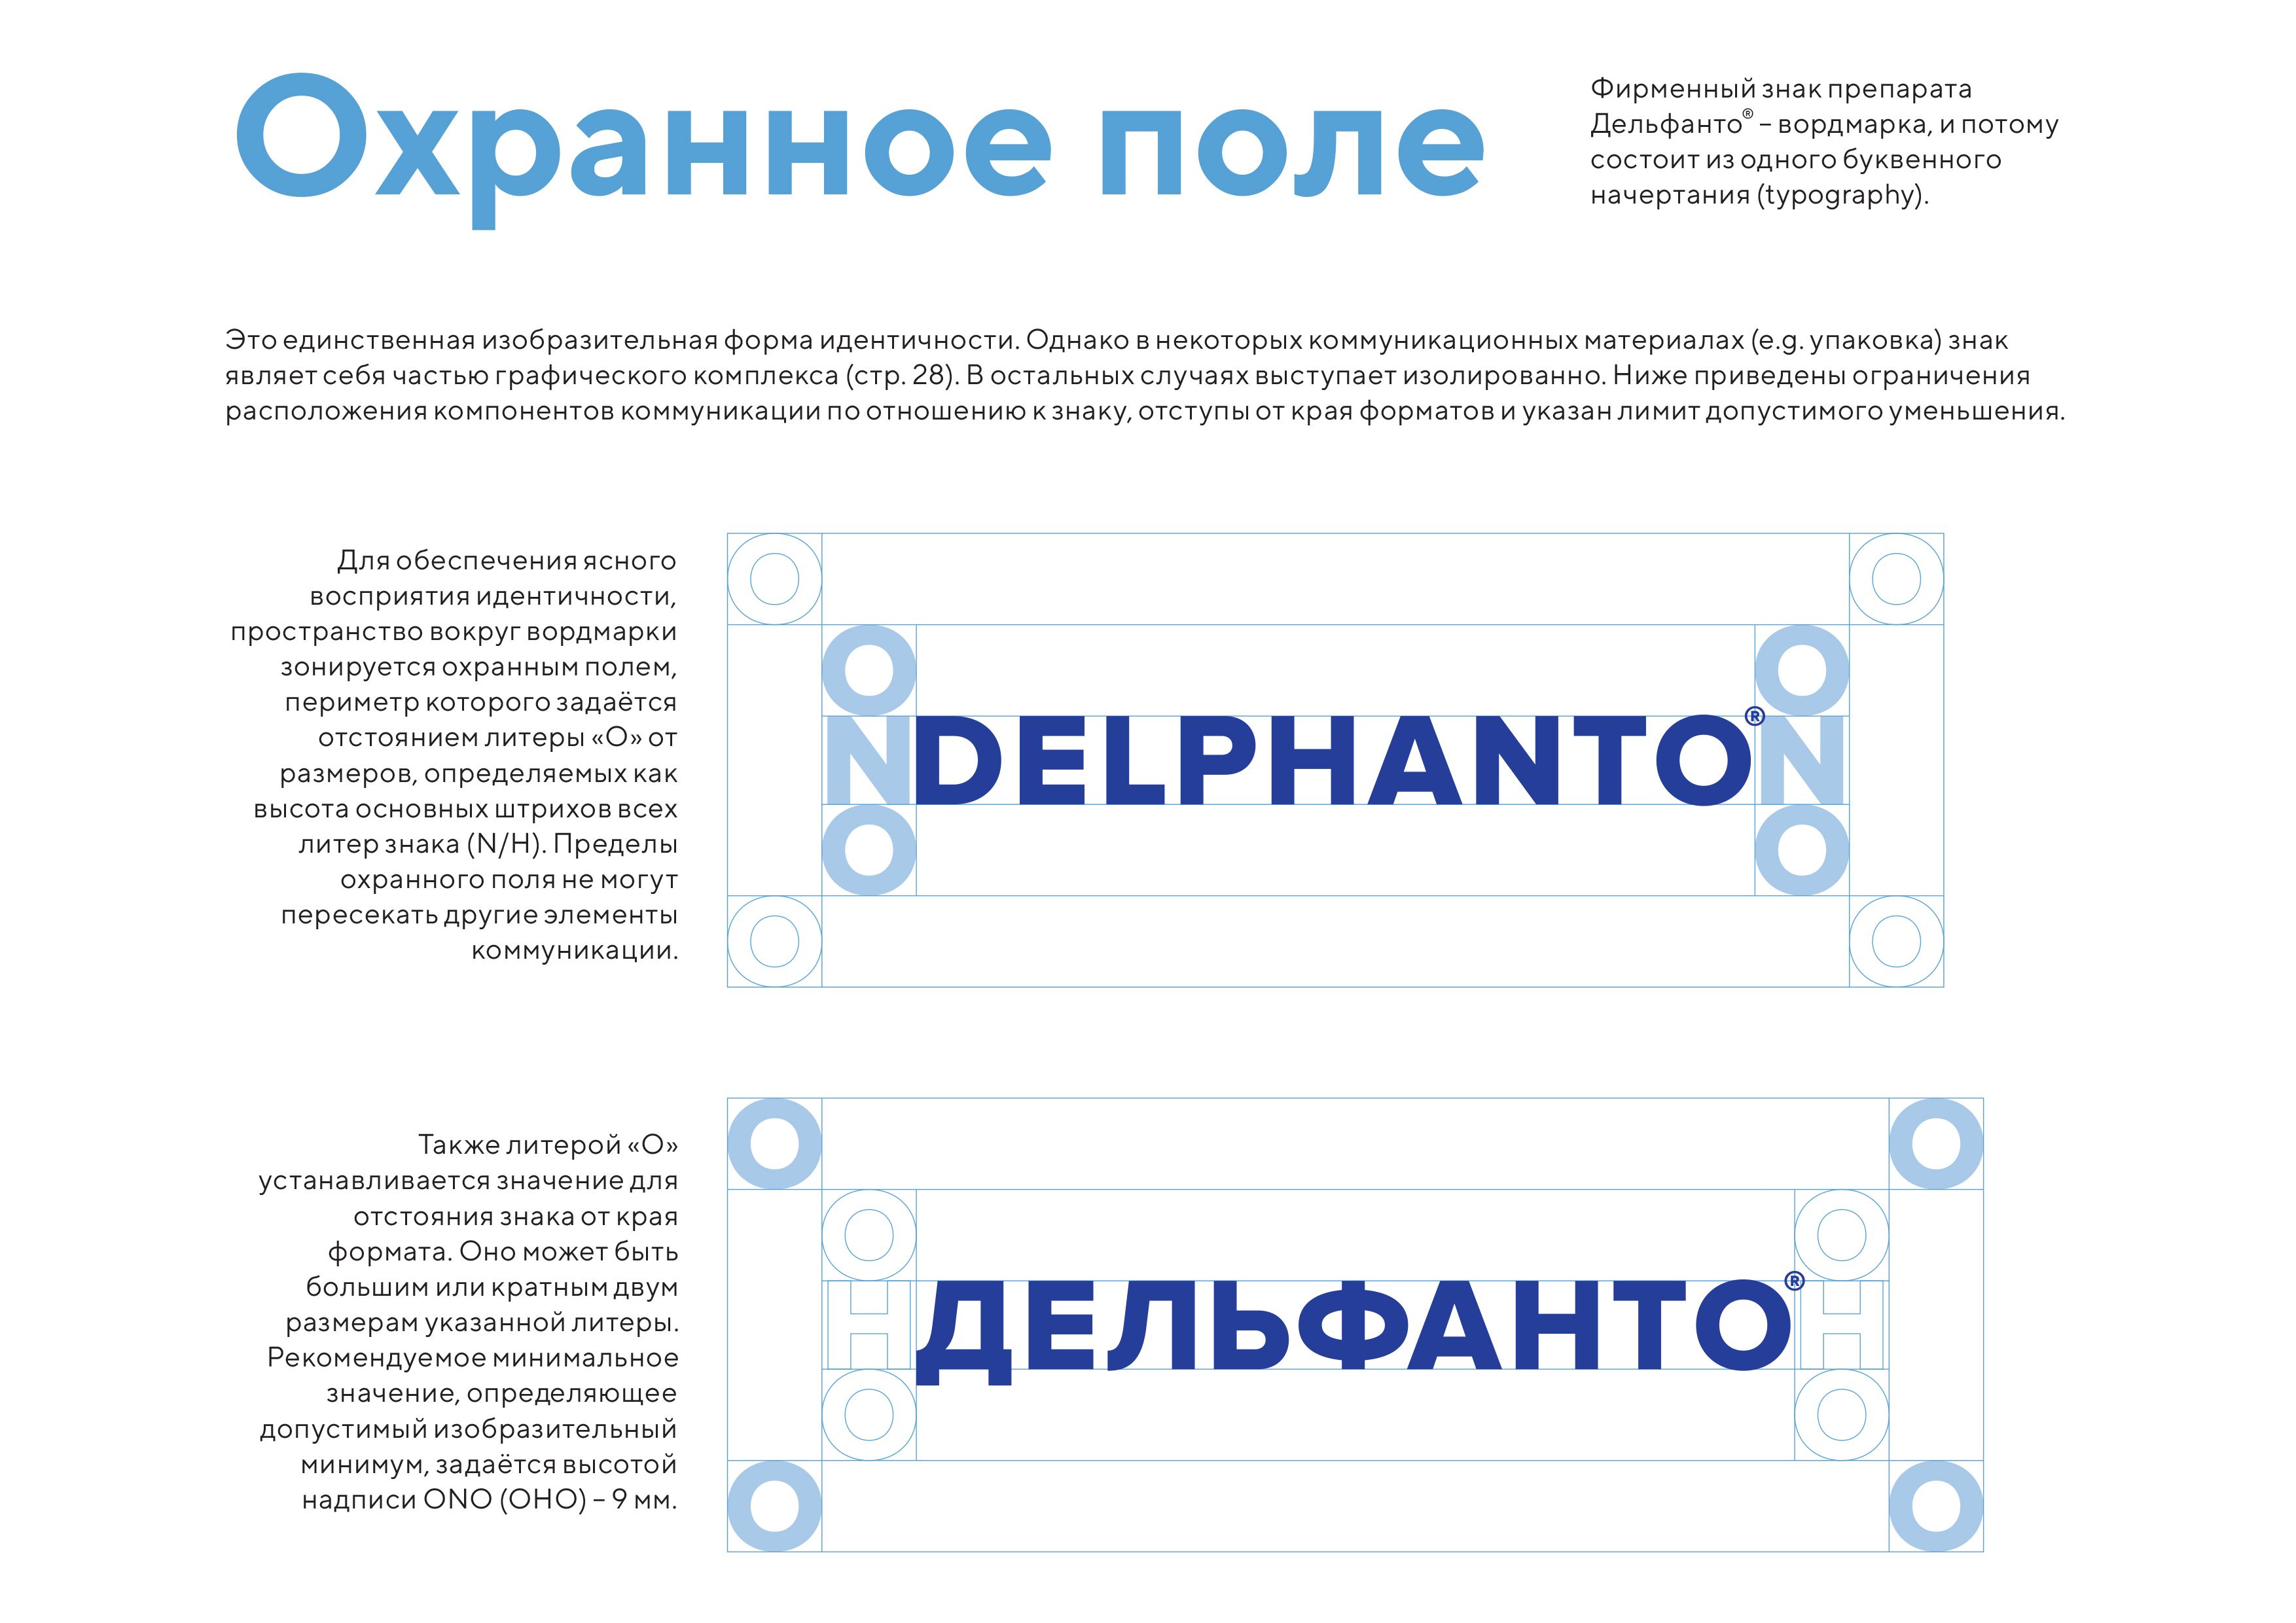 Delphanto2 - Delphanto Brandbook